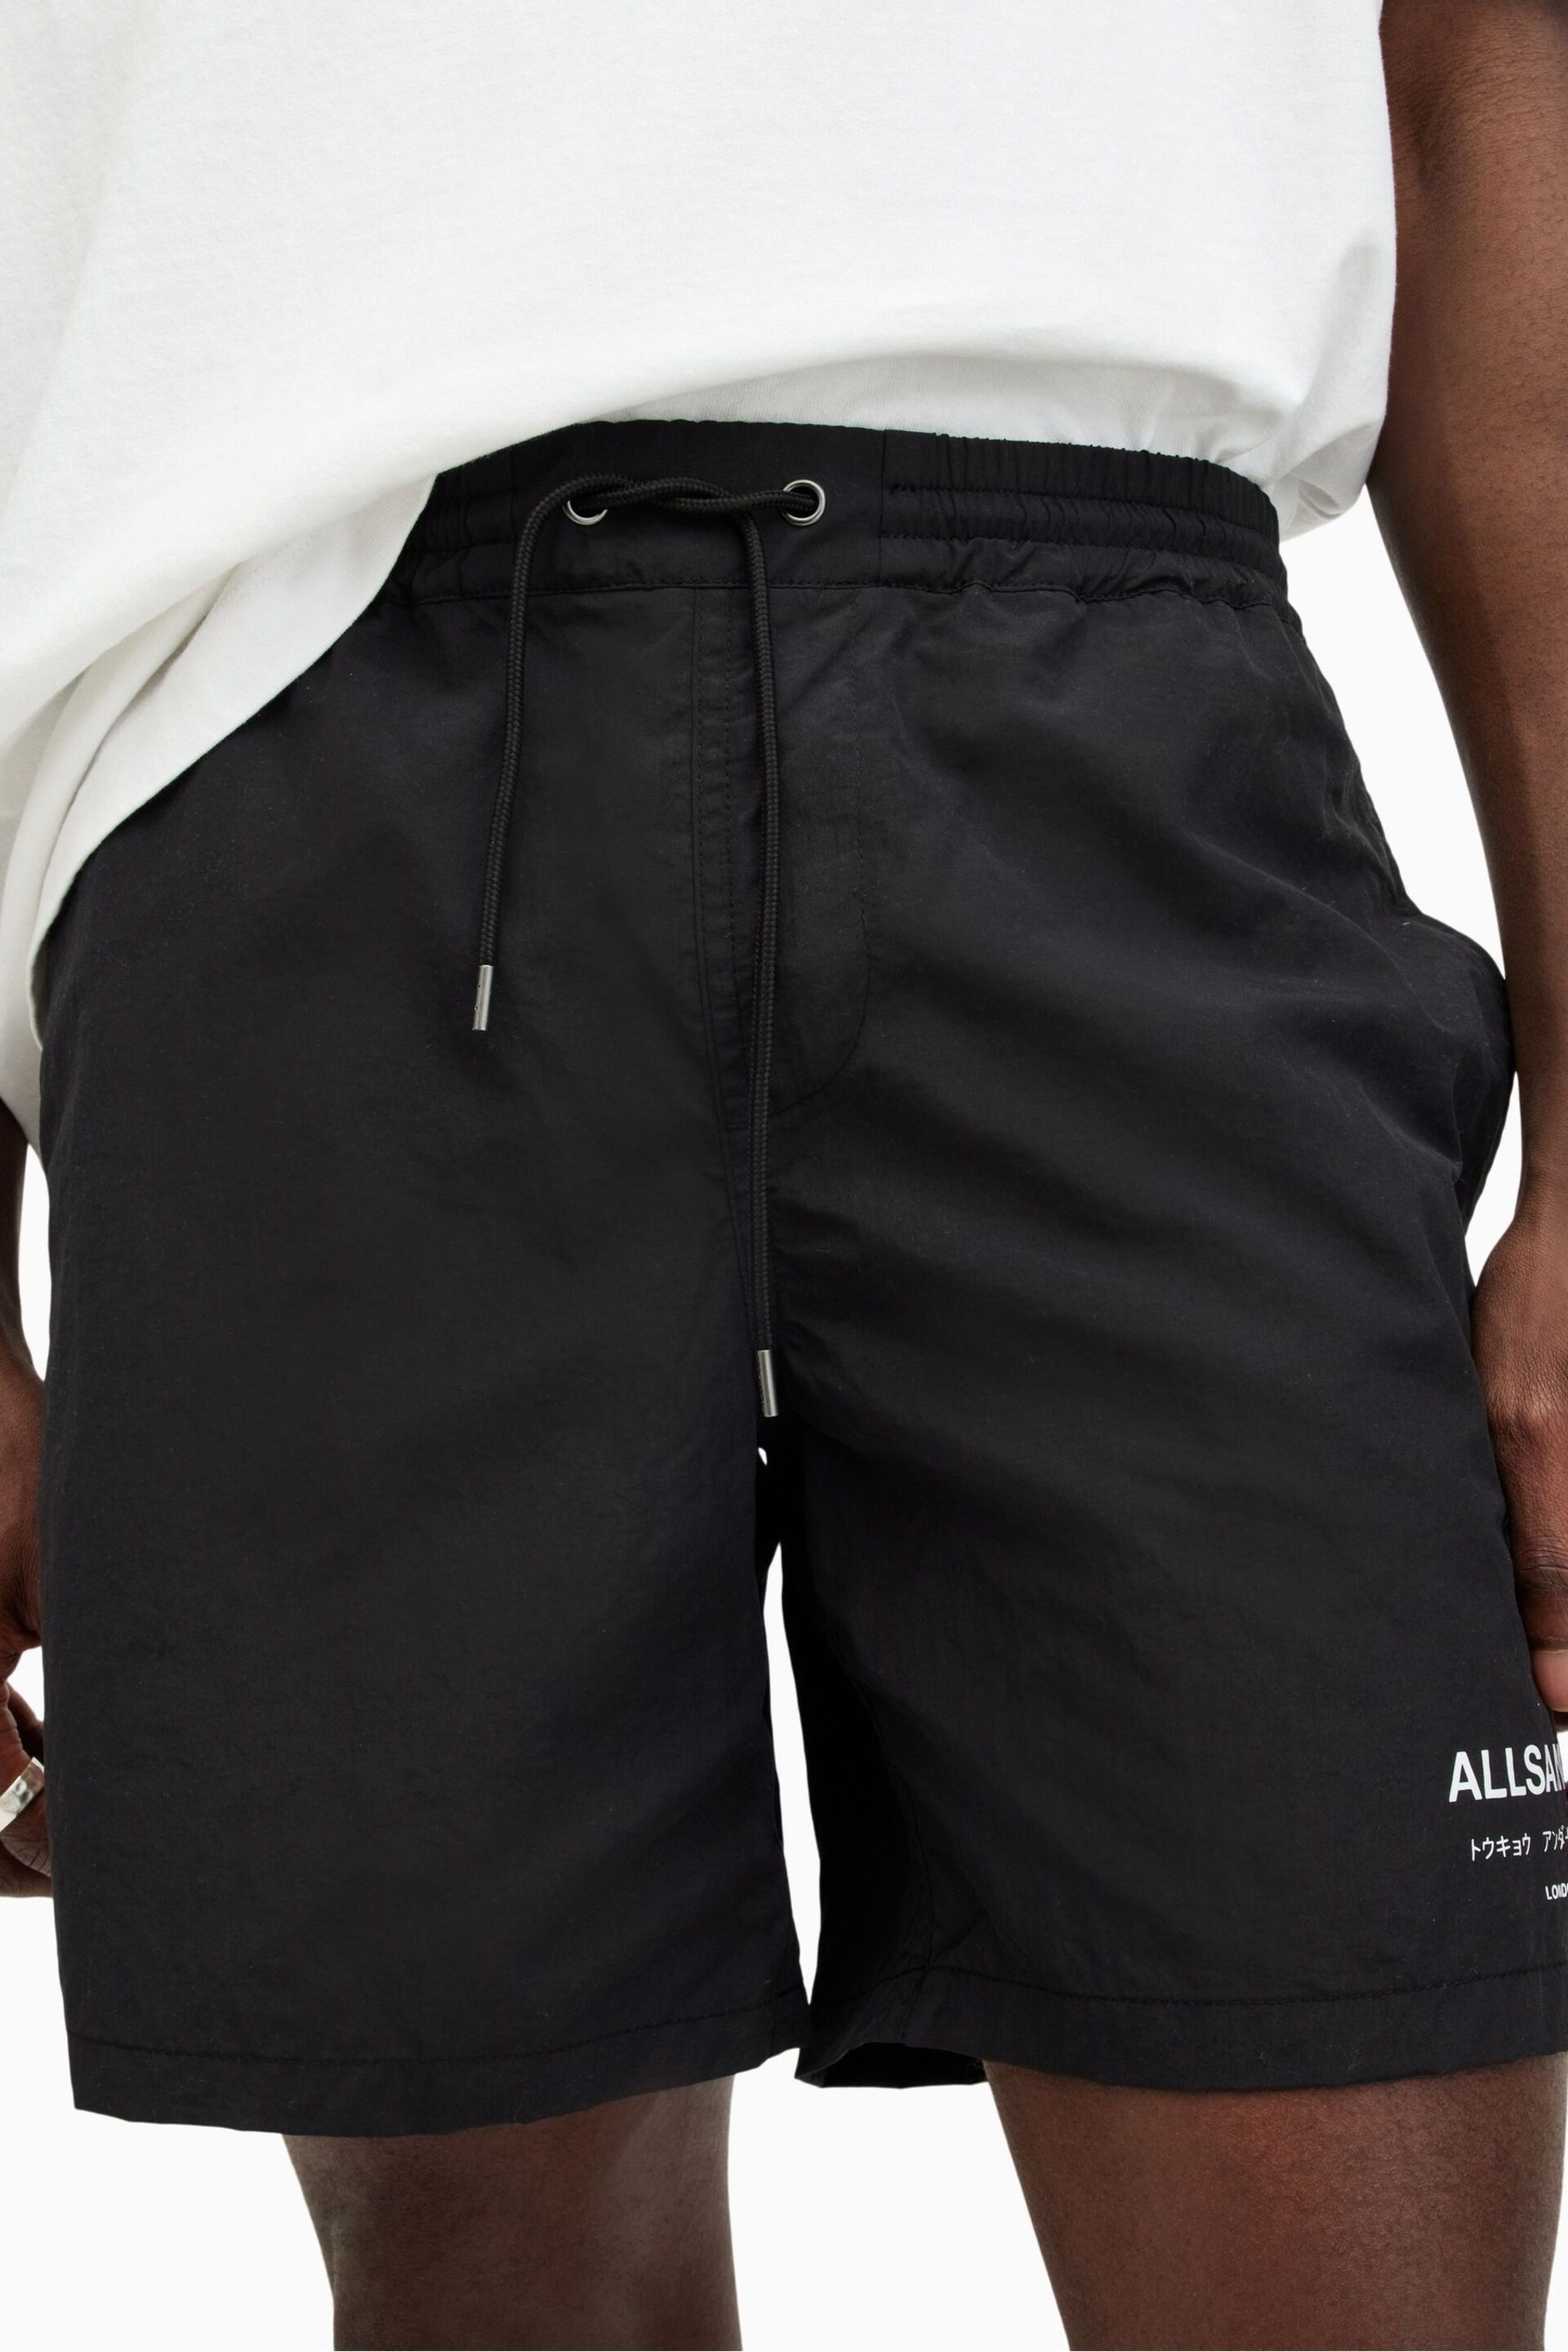 AllSaints Underground Black Swim Shorts - Image 8 of 10